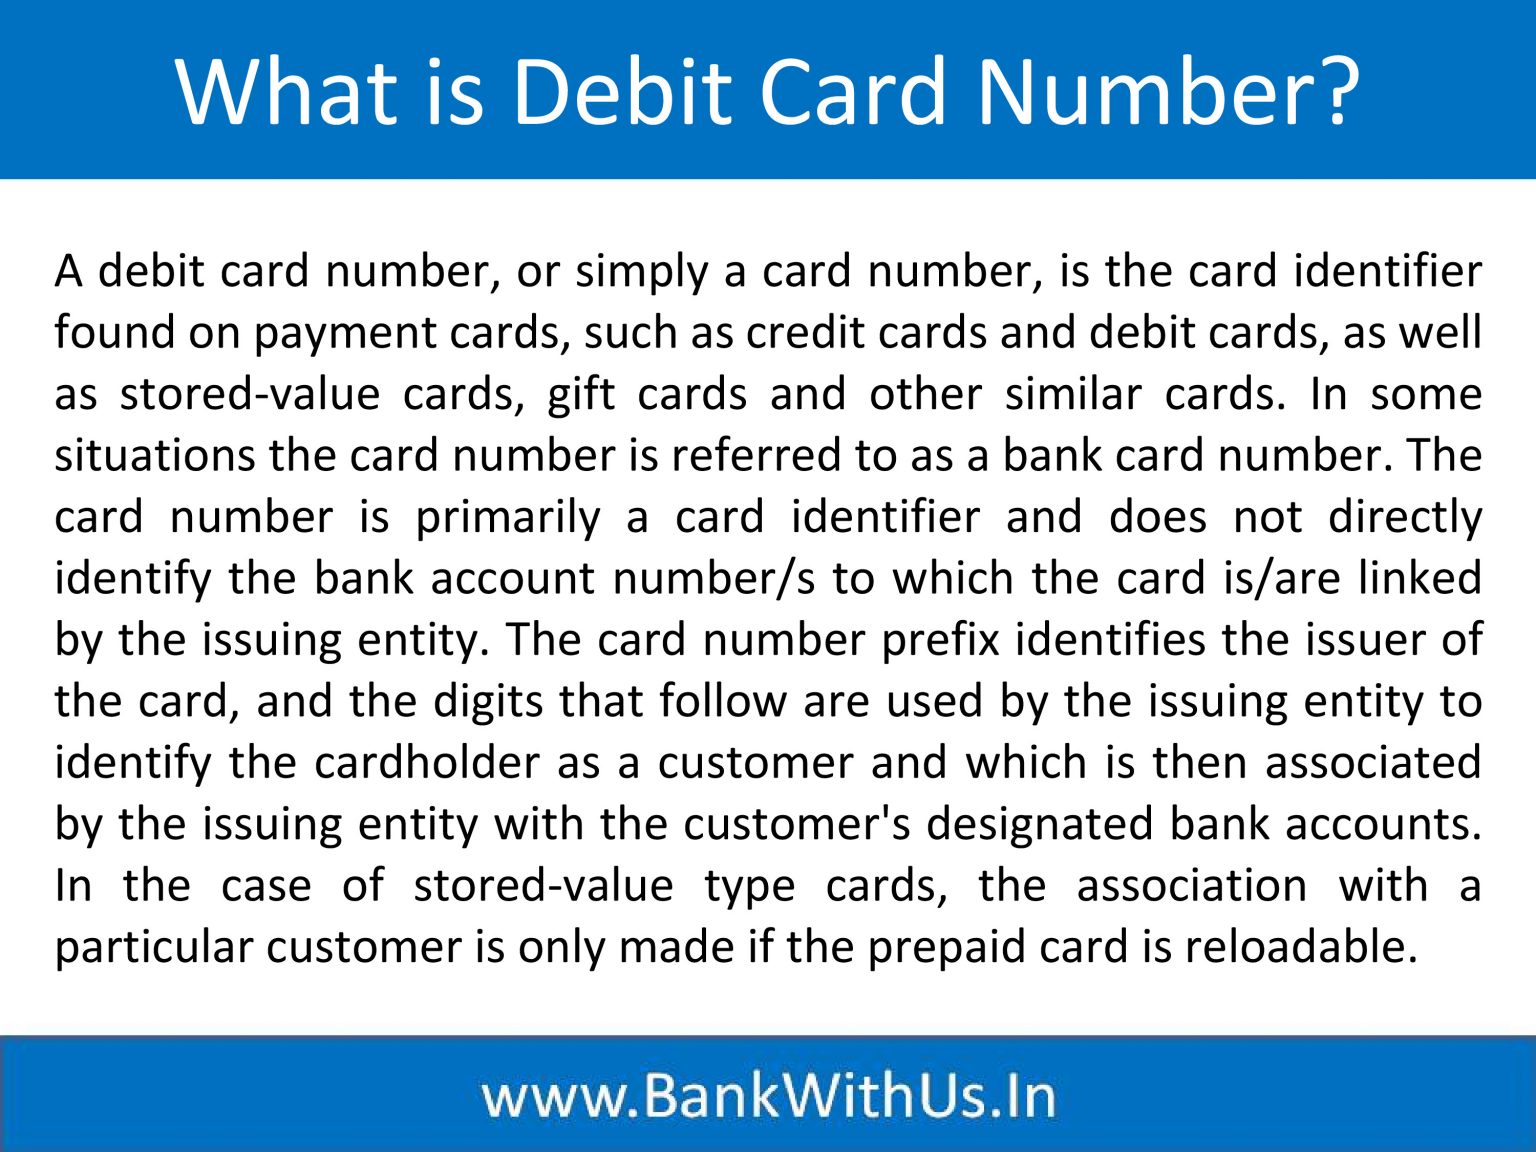 how do debit cards numbers work